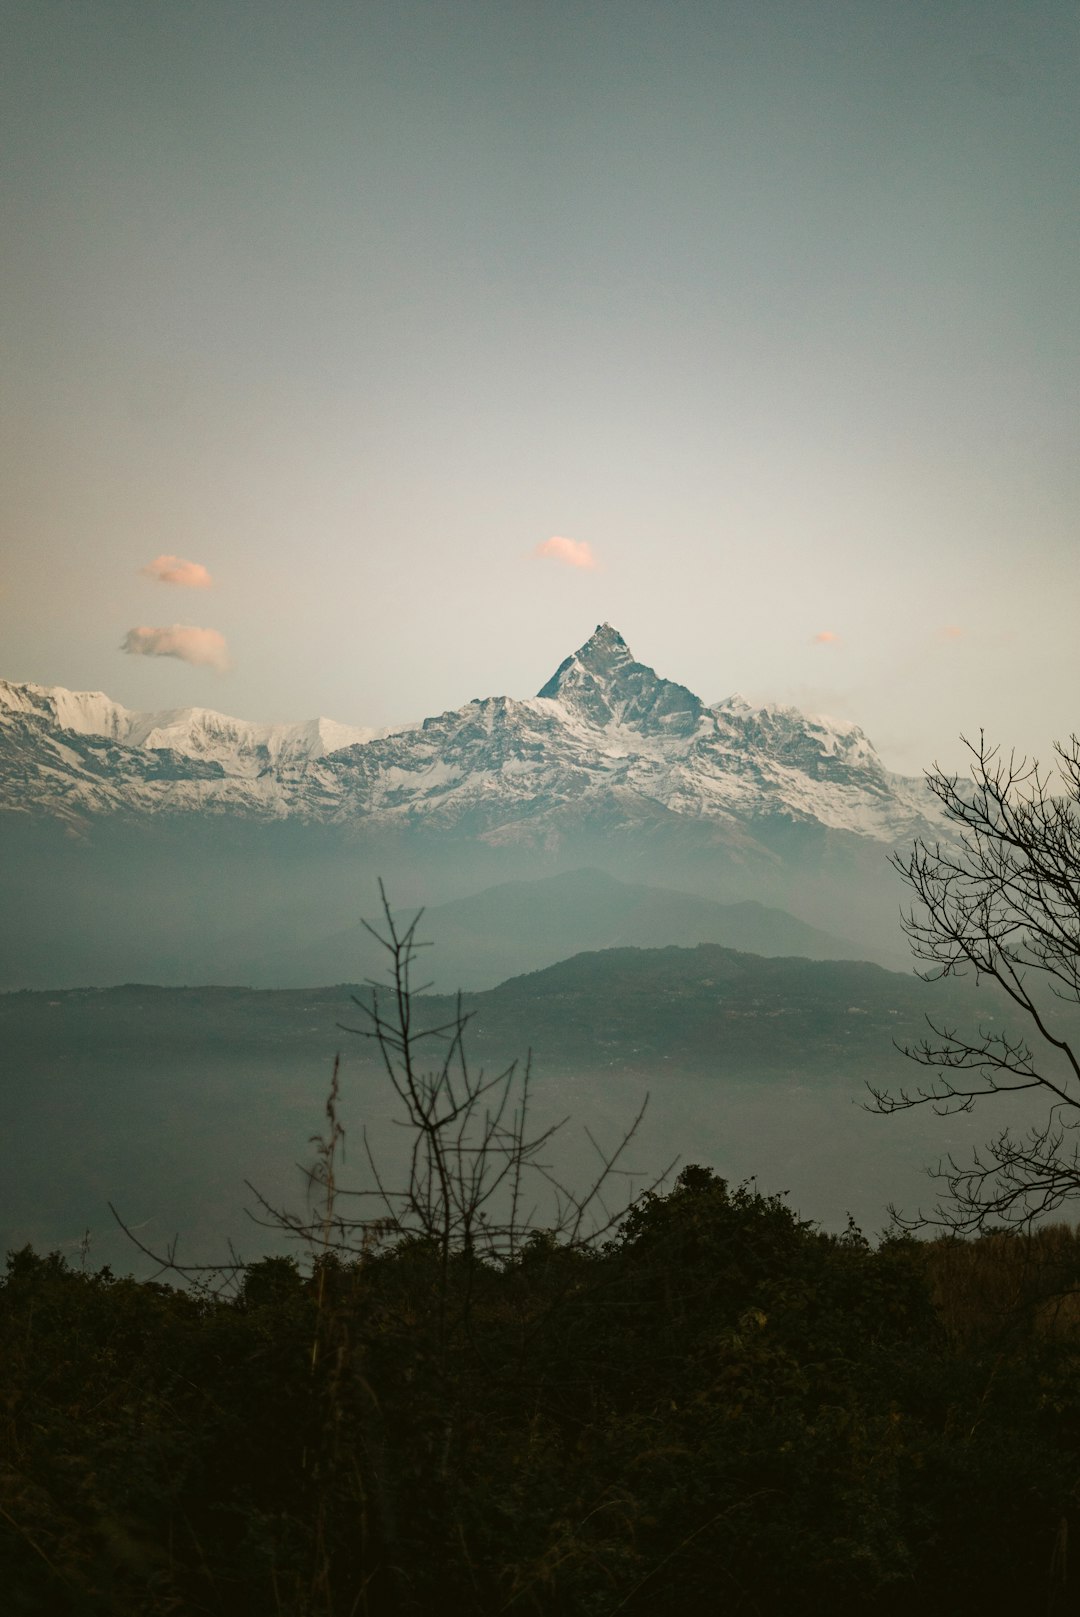 Mountain range photo spot Pumdi Bhumdi Manang